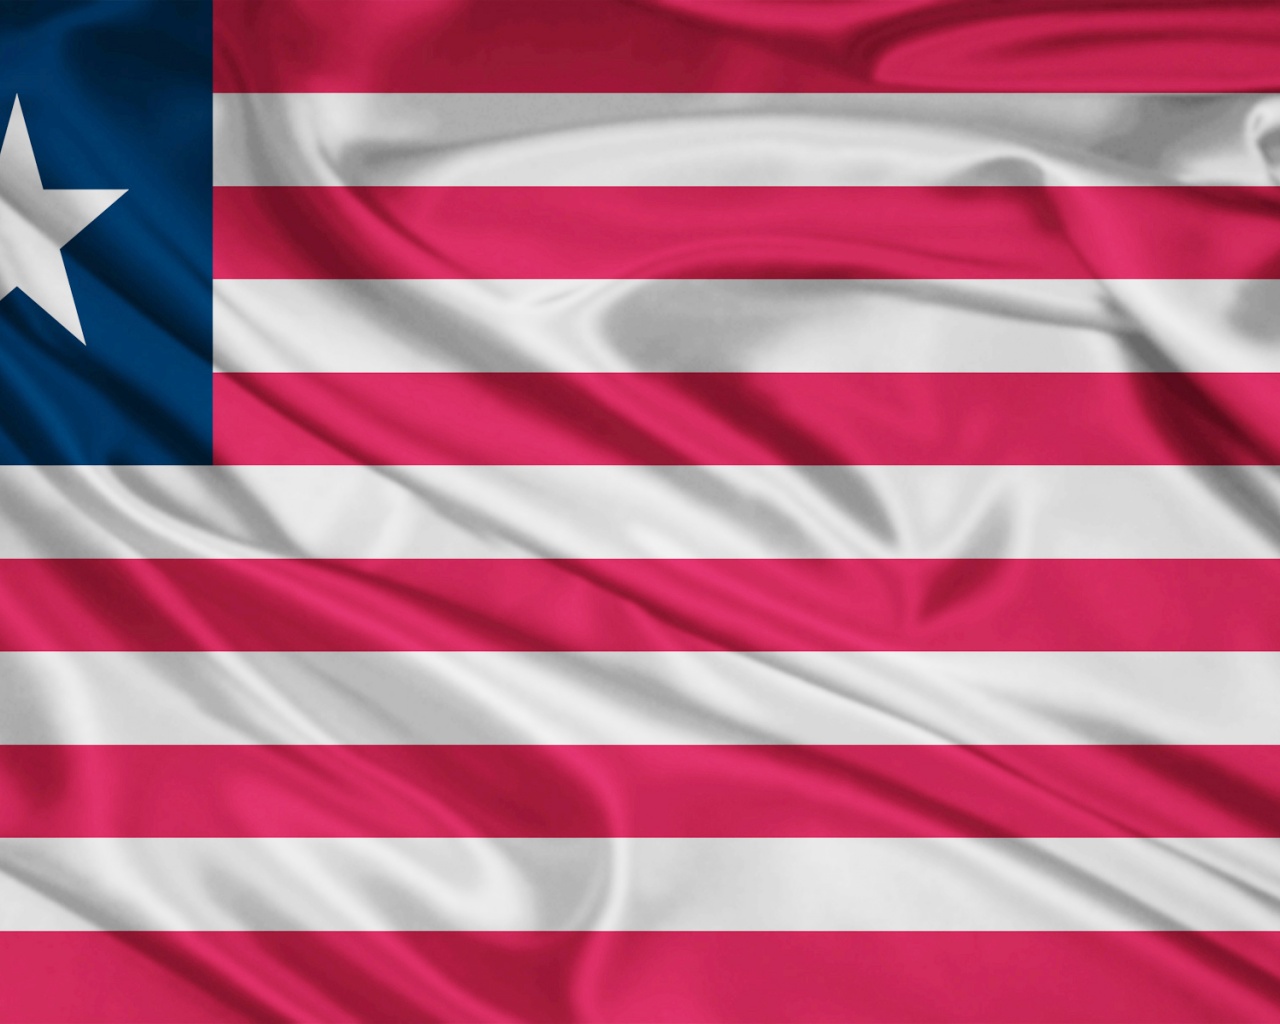 Liberia Flag Desktop Pc And Mac Wallpaper